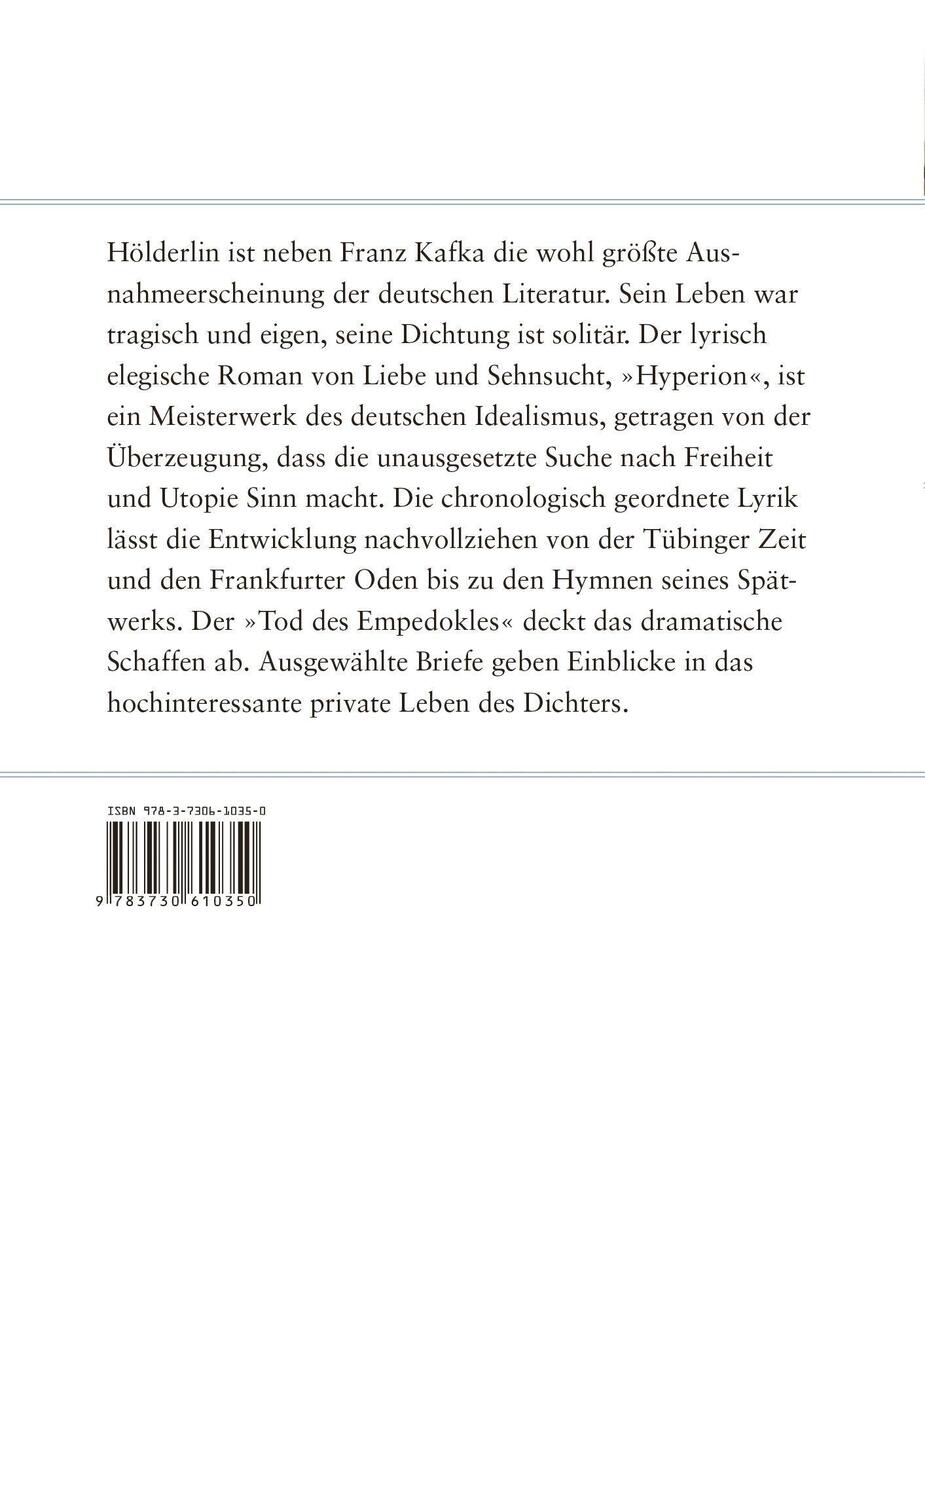 Bild: 9783730610350 | Hyperion und andere Werke | Friedrich Hölderlin | Buch | Deutsch